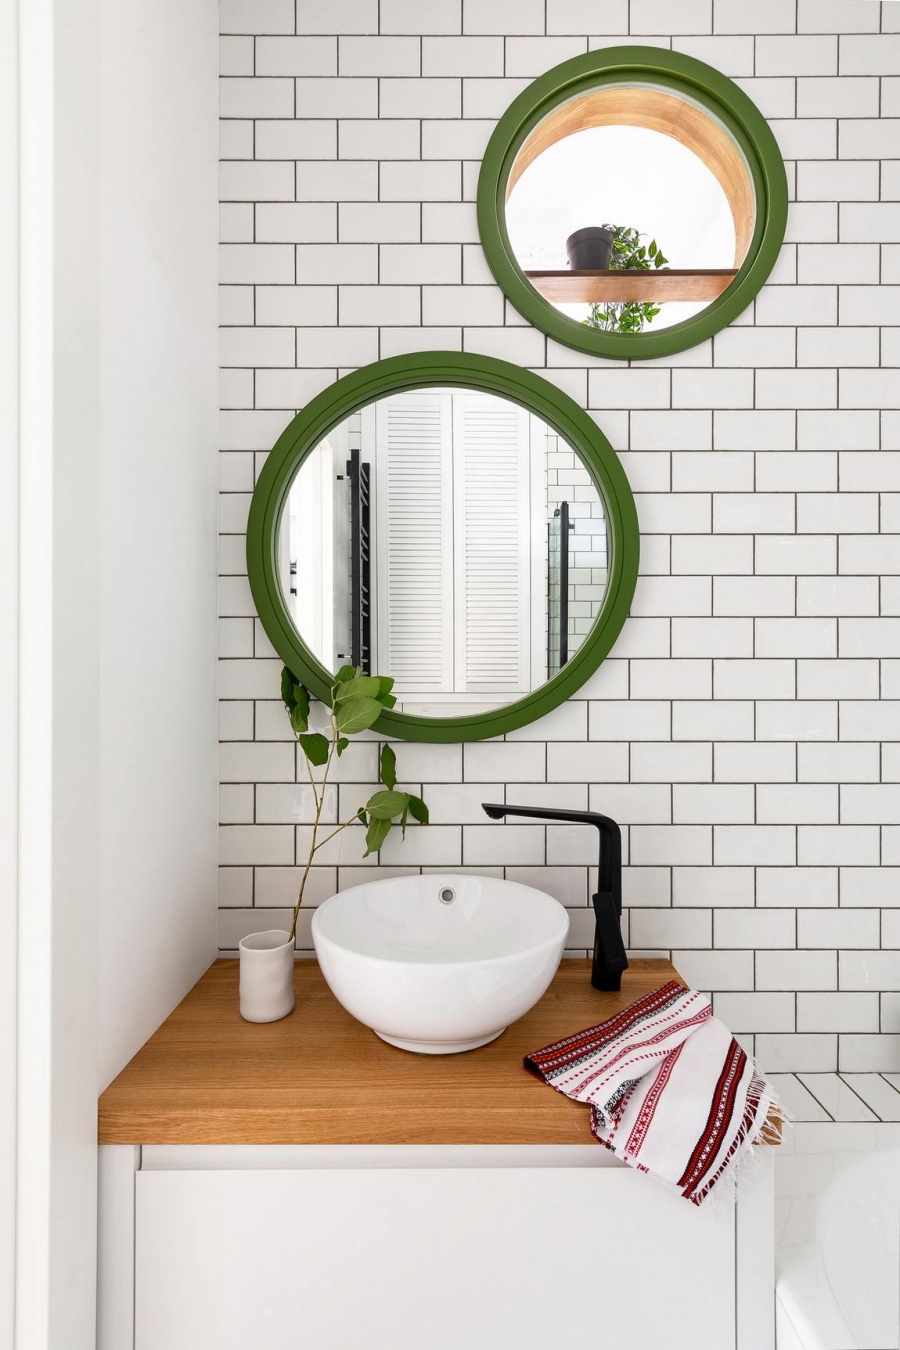 Phòng tắm bố trí sau lưng tường phòng bếp, kết nối với nhau bởi khung cửa nhỏ hình tròn trên tường. Tấm gương viền khung màu xanh lá tạo cảm giác như có đến 2 khung cửa nhỏ trên tường.